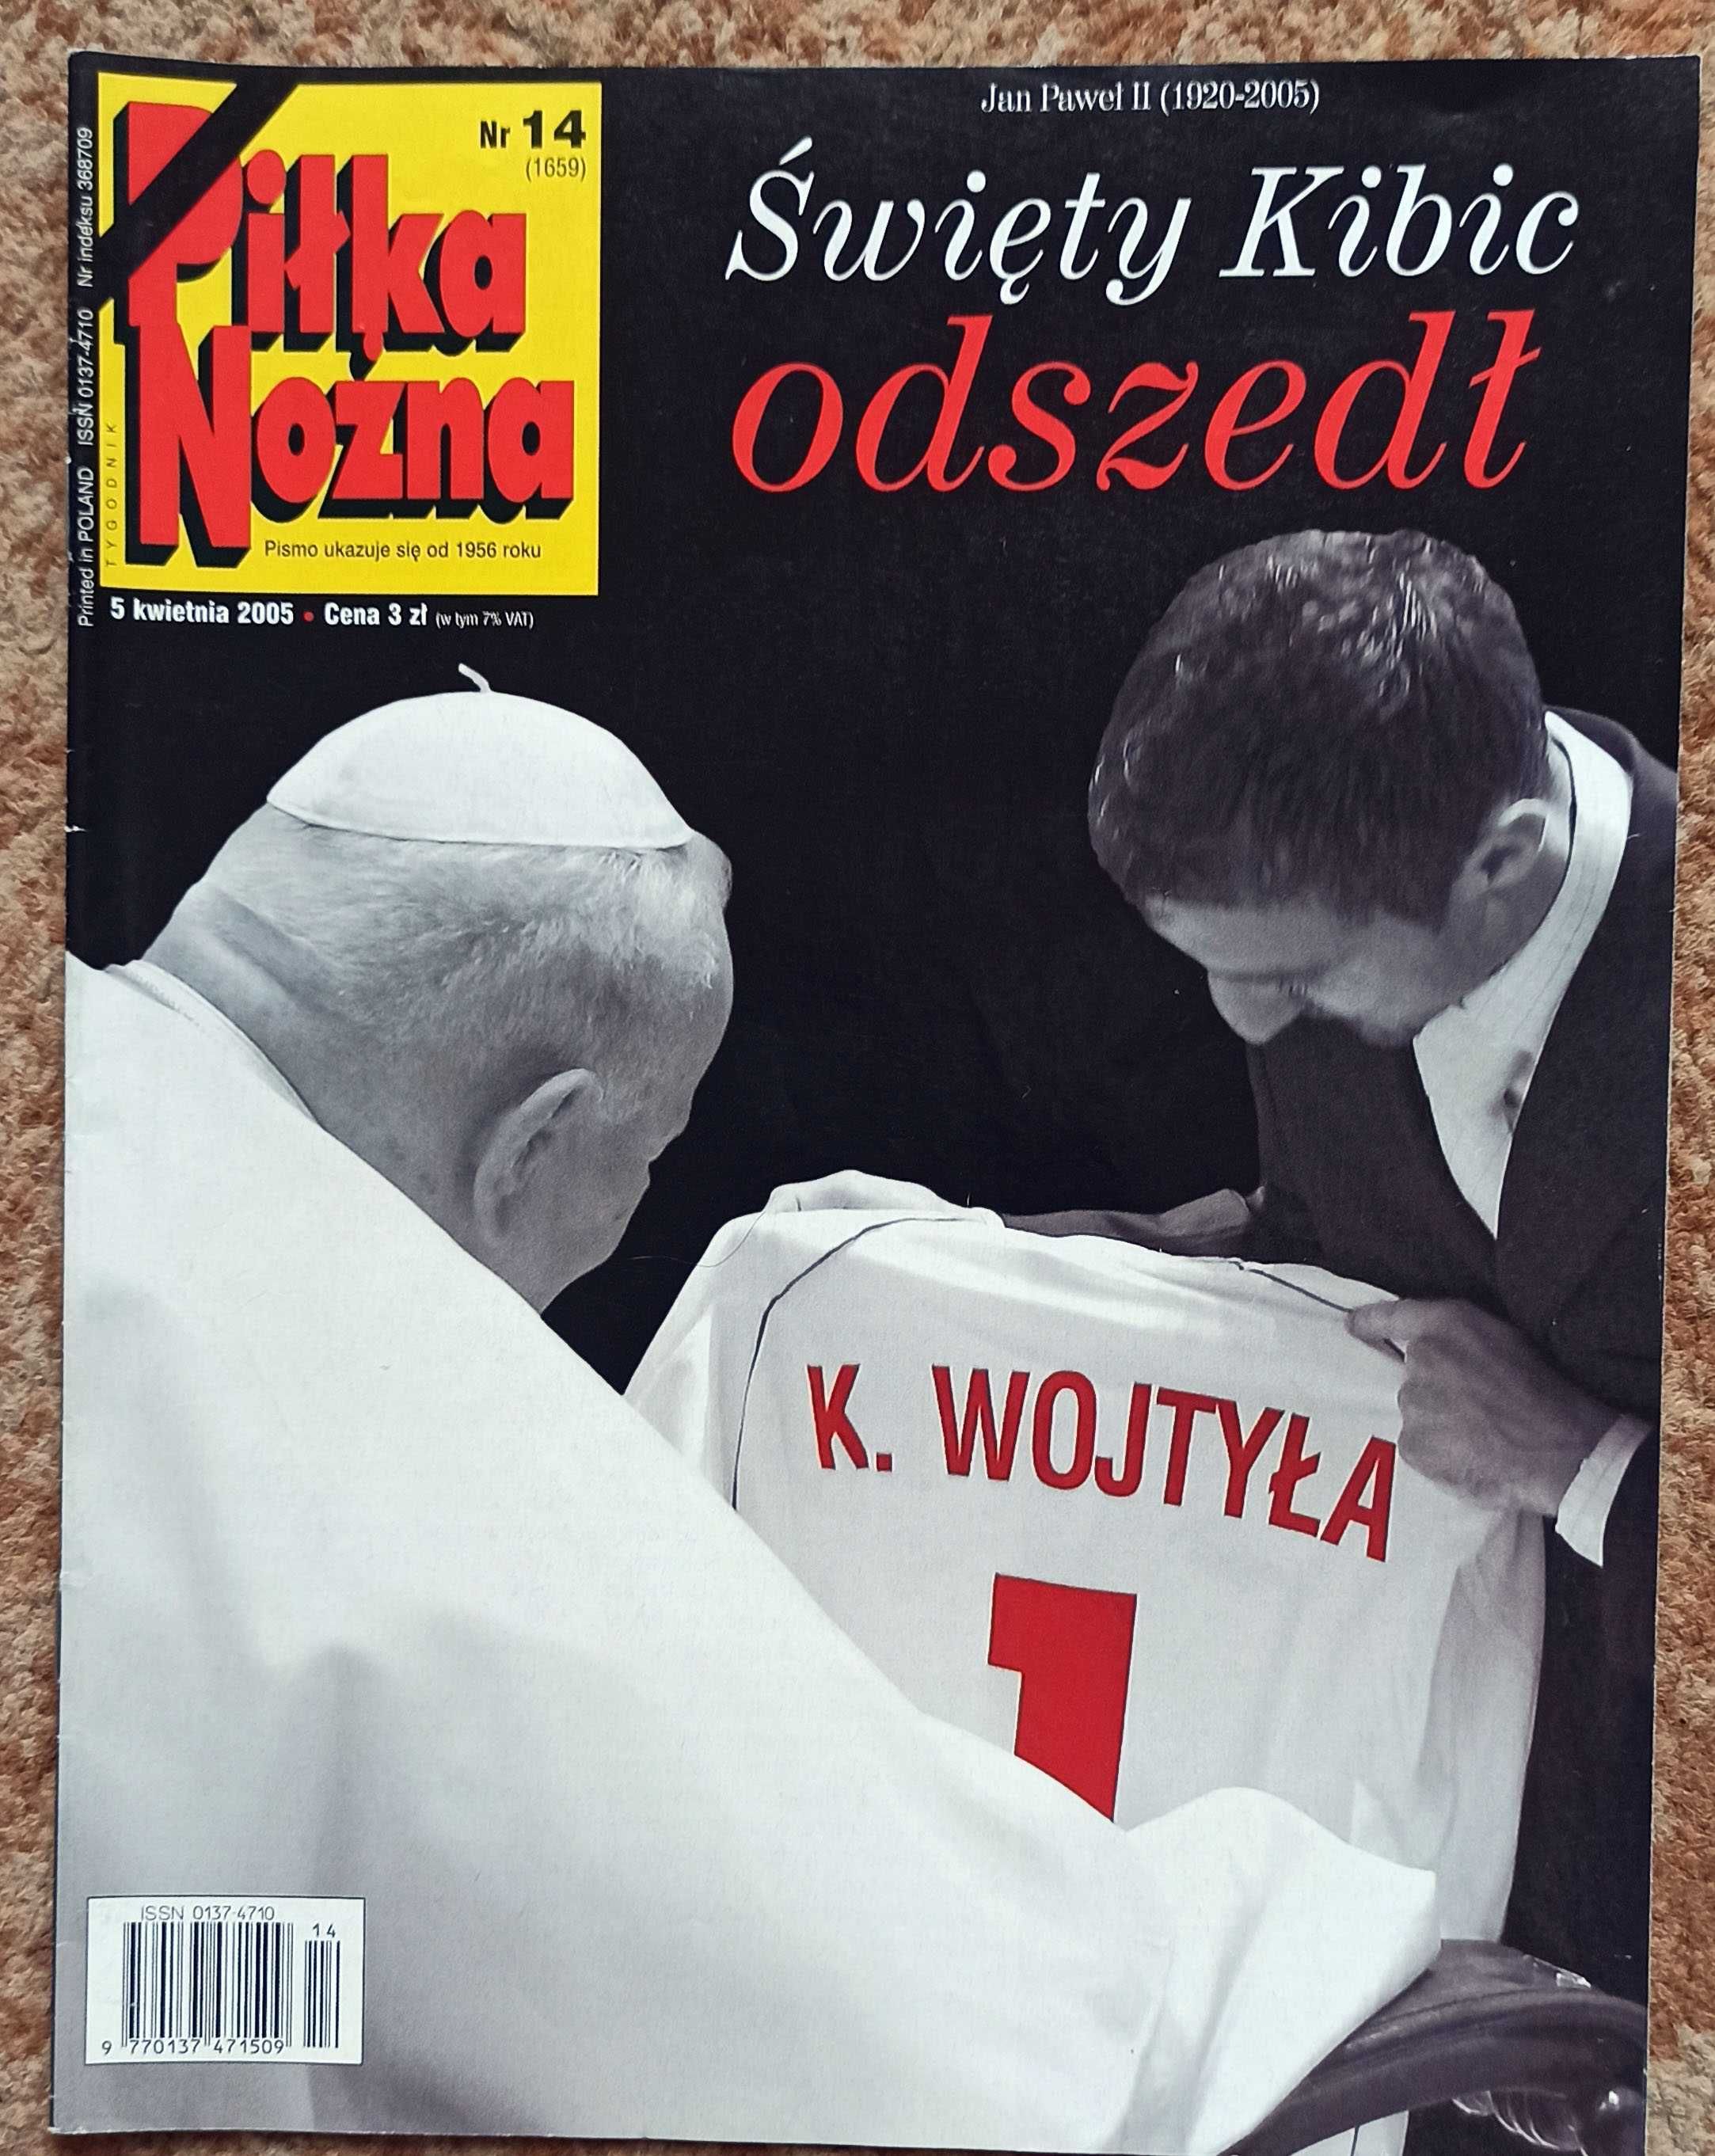 Piłka Nożna  Nr 14/2005 Jan Paweł II